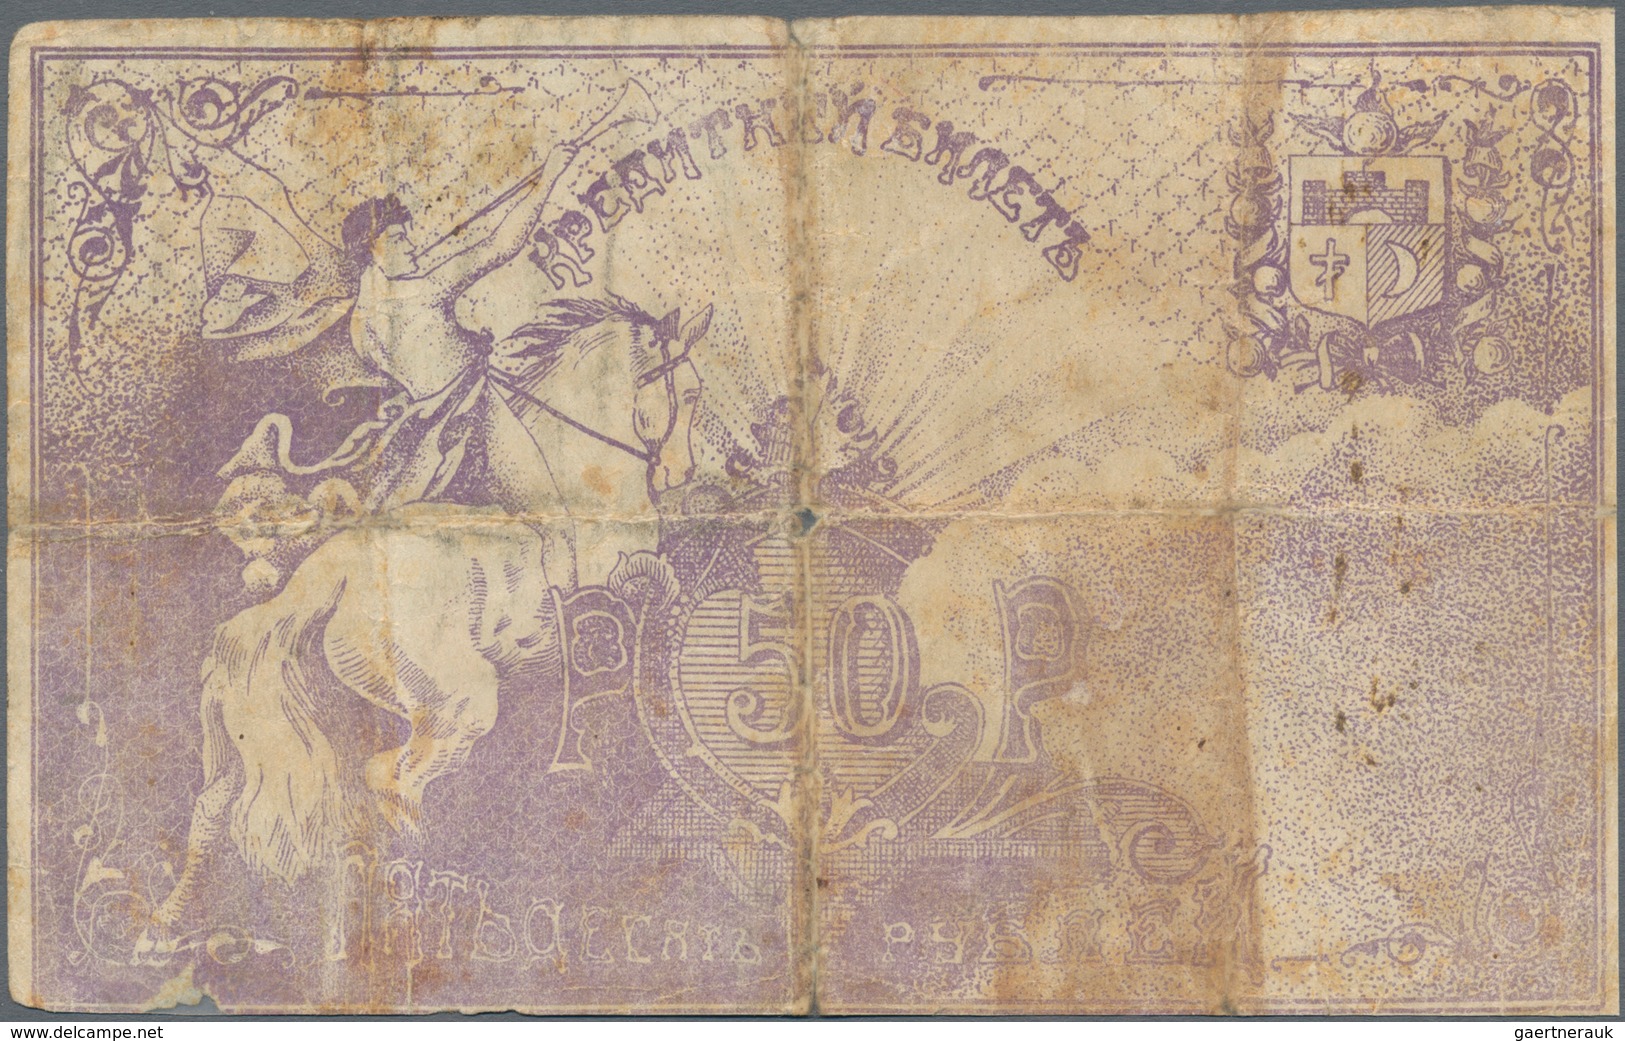 Russia / Russland: Central Asia - Semireche Region 50 Rubles 1918, P.S1123 (R. 20608, K. 8), Conditi - Russia